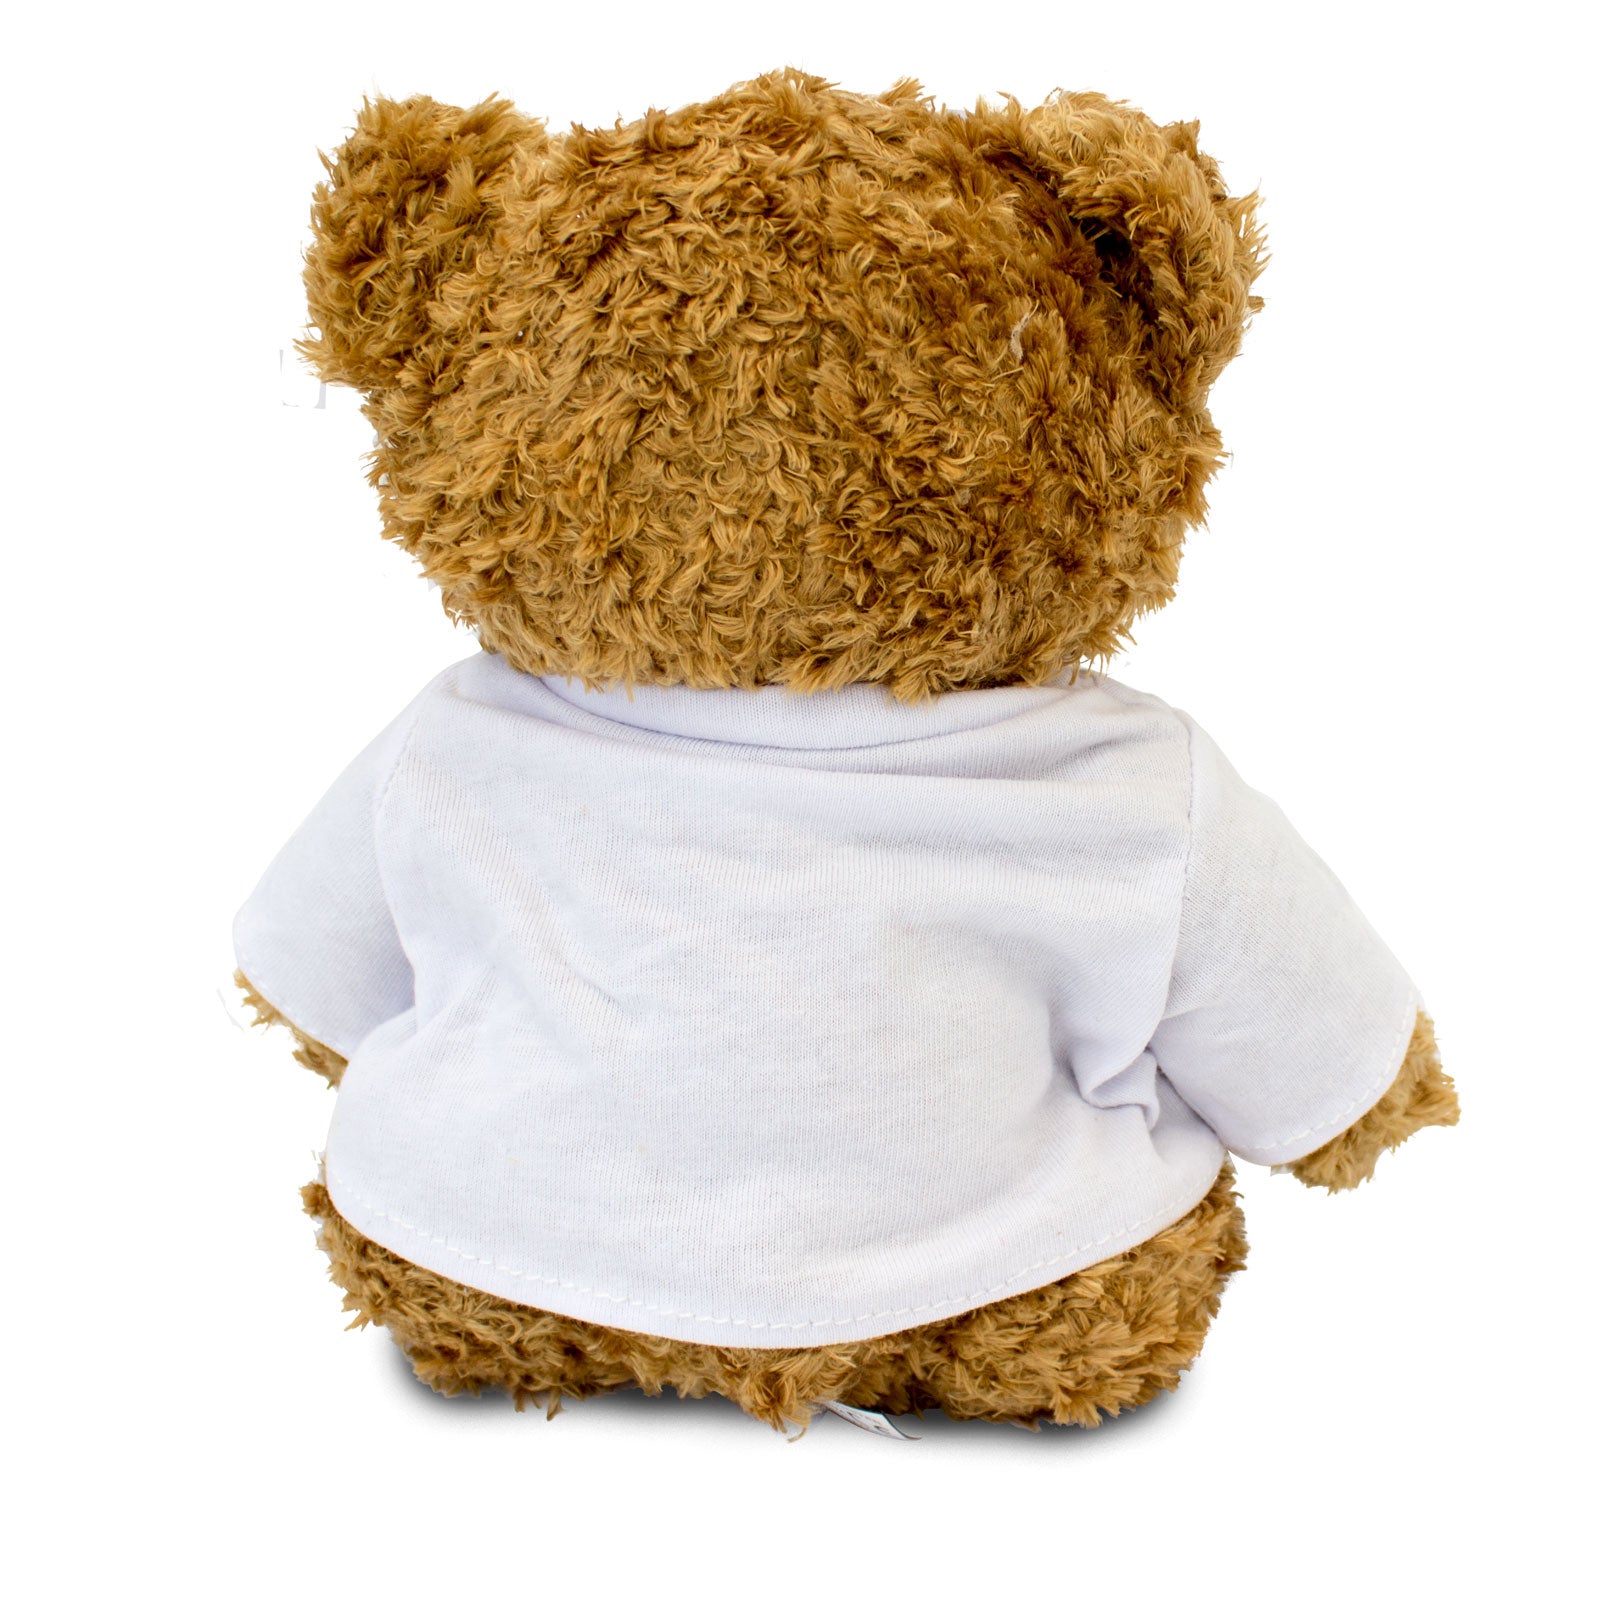 I Love Football - Teddy Bear